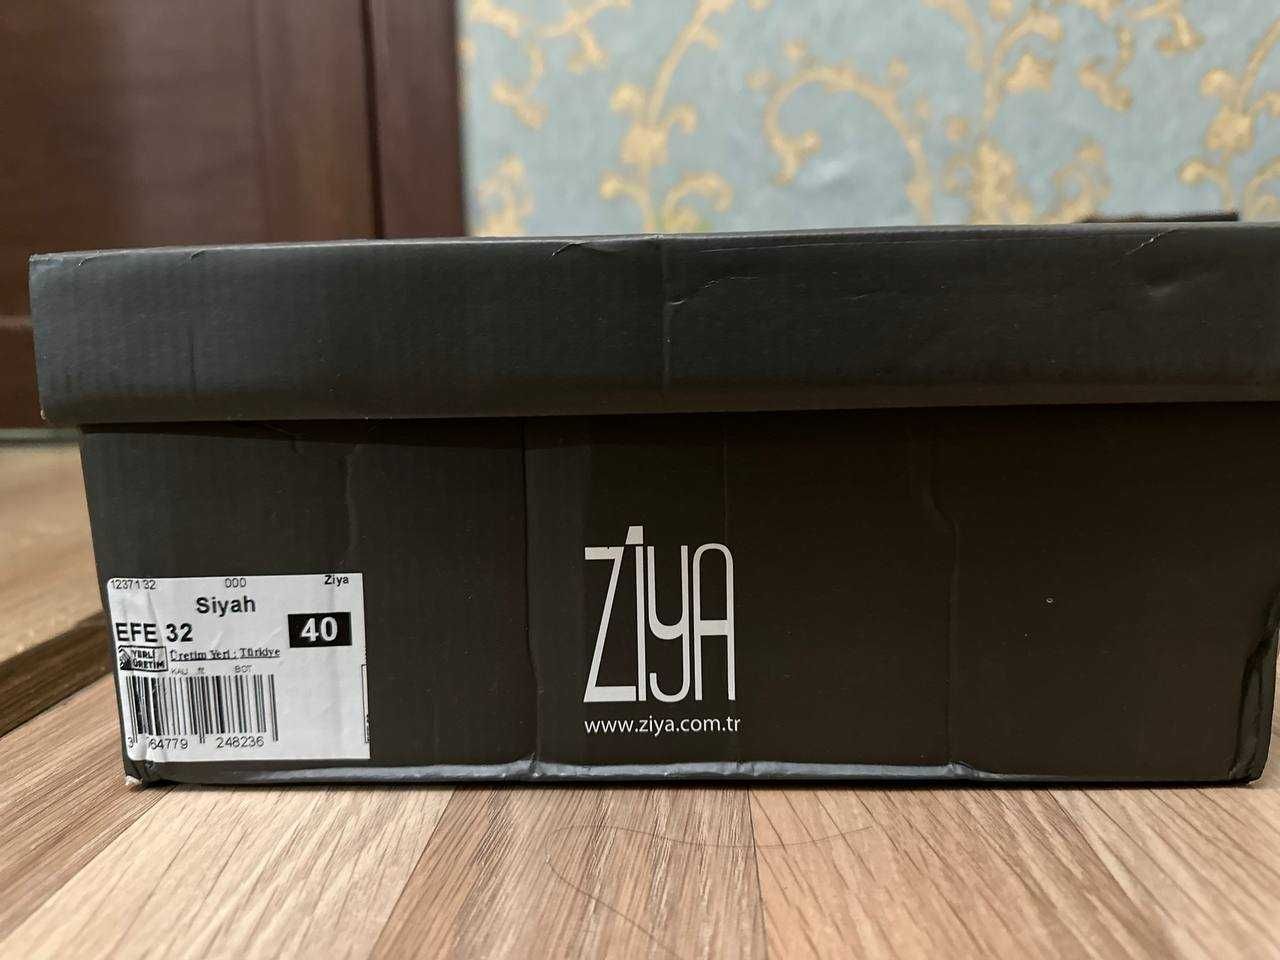 Продаётся пара обуви кожаных сапогов марки бренда ''Ziya''.